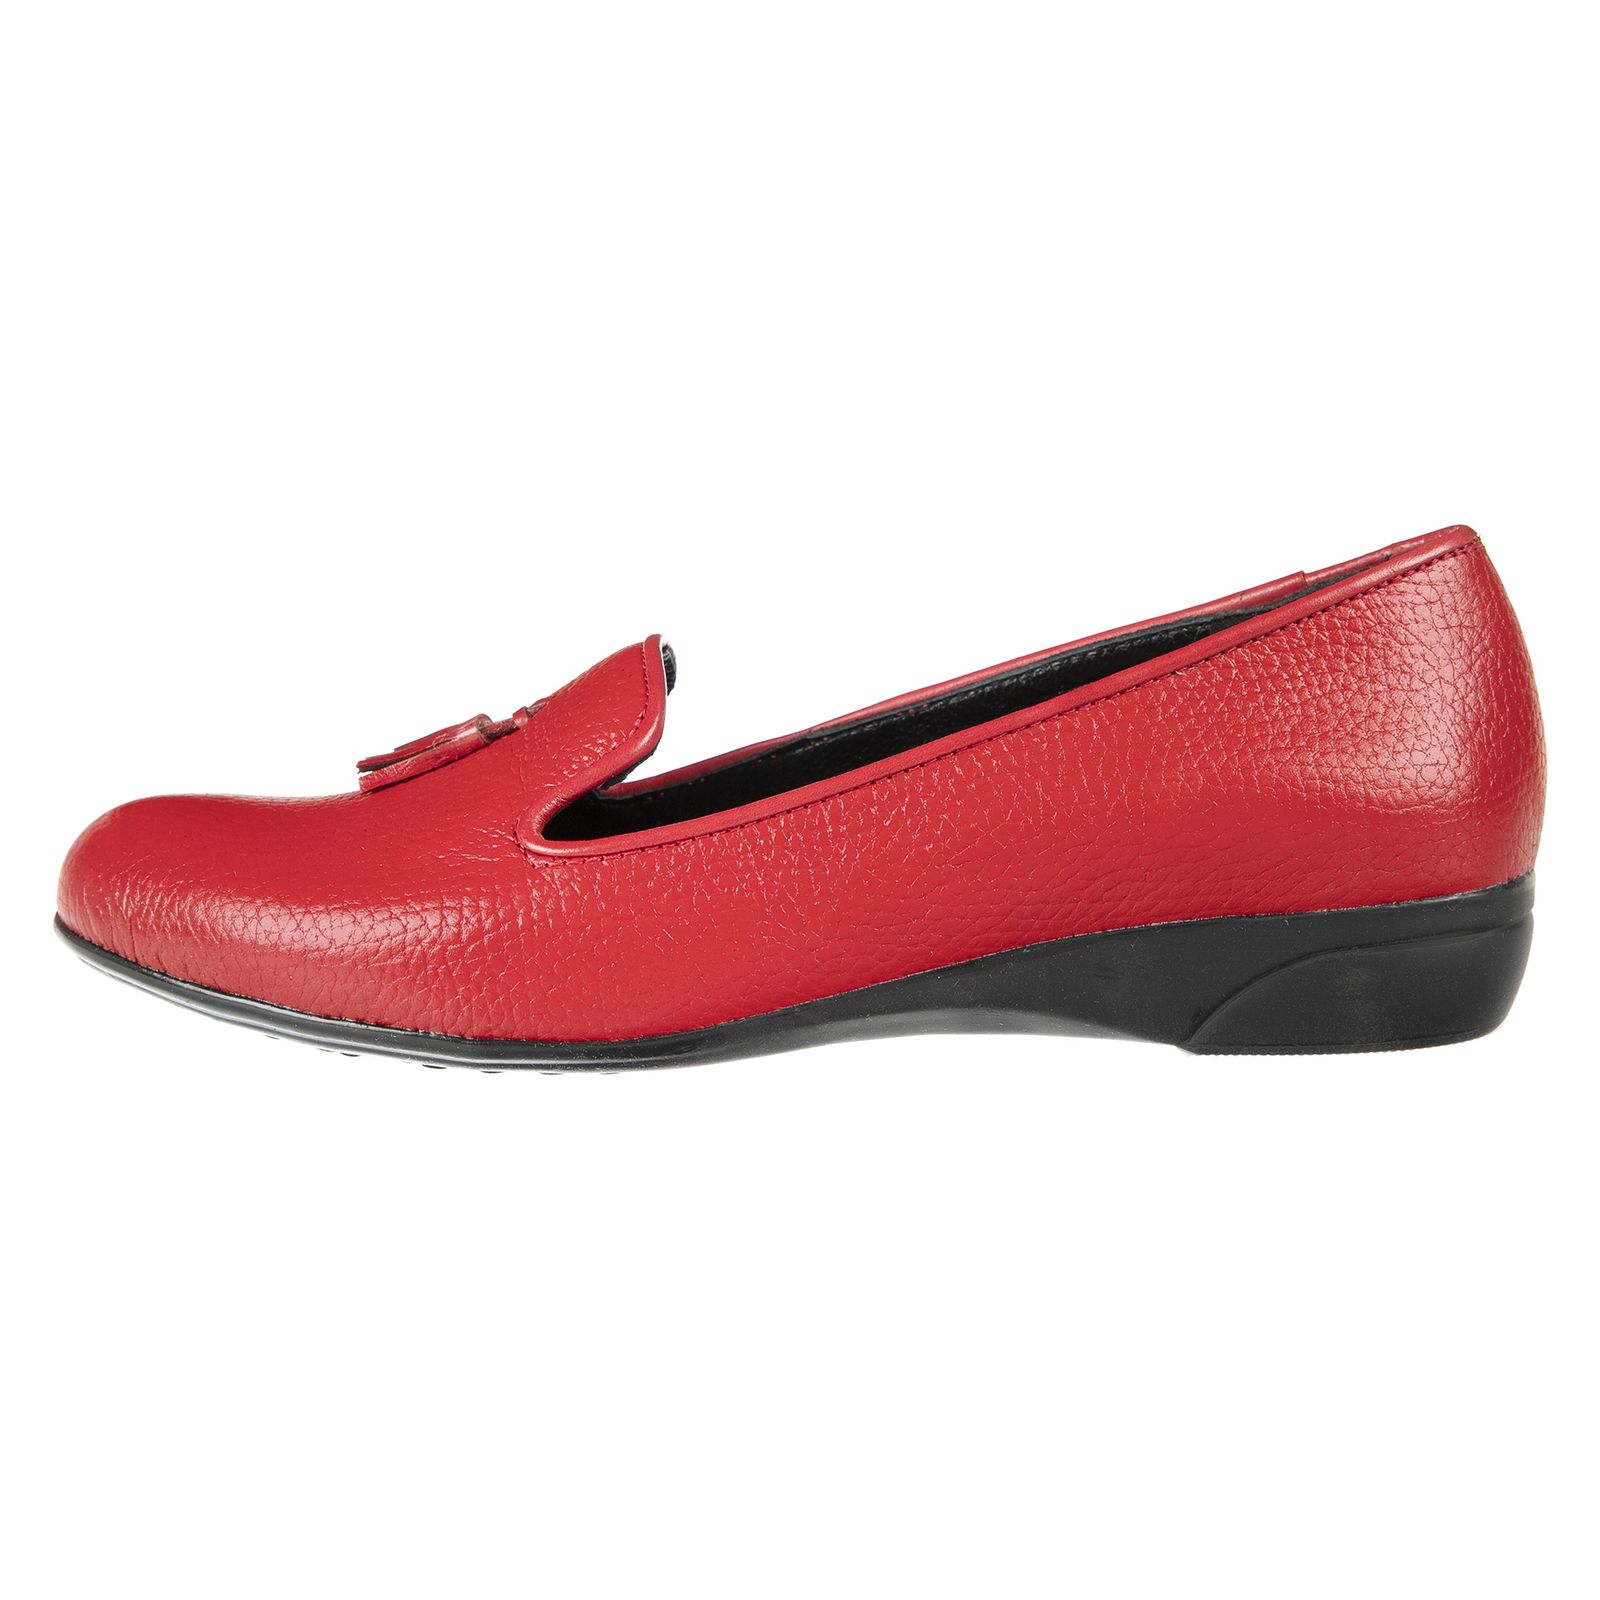 کفش زنانه دلفارد مدل 5183A500-102 - قرمز - 1